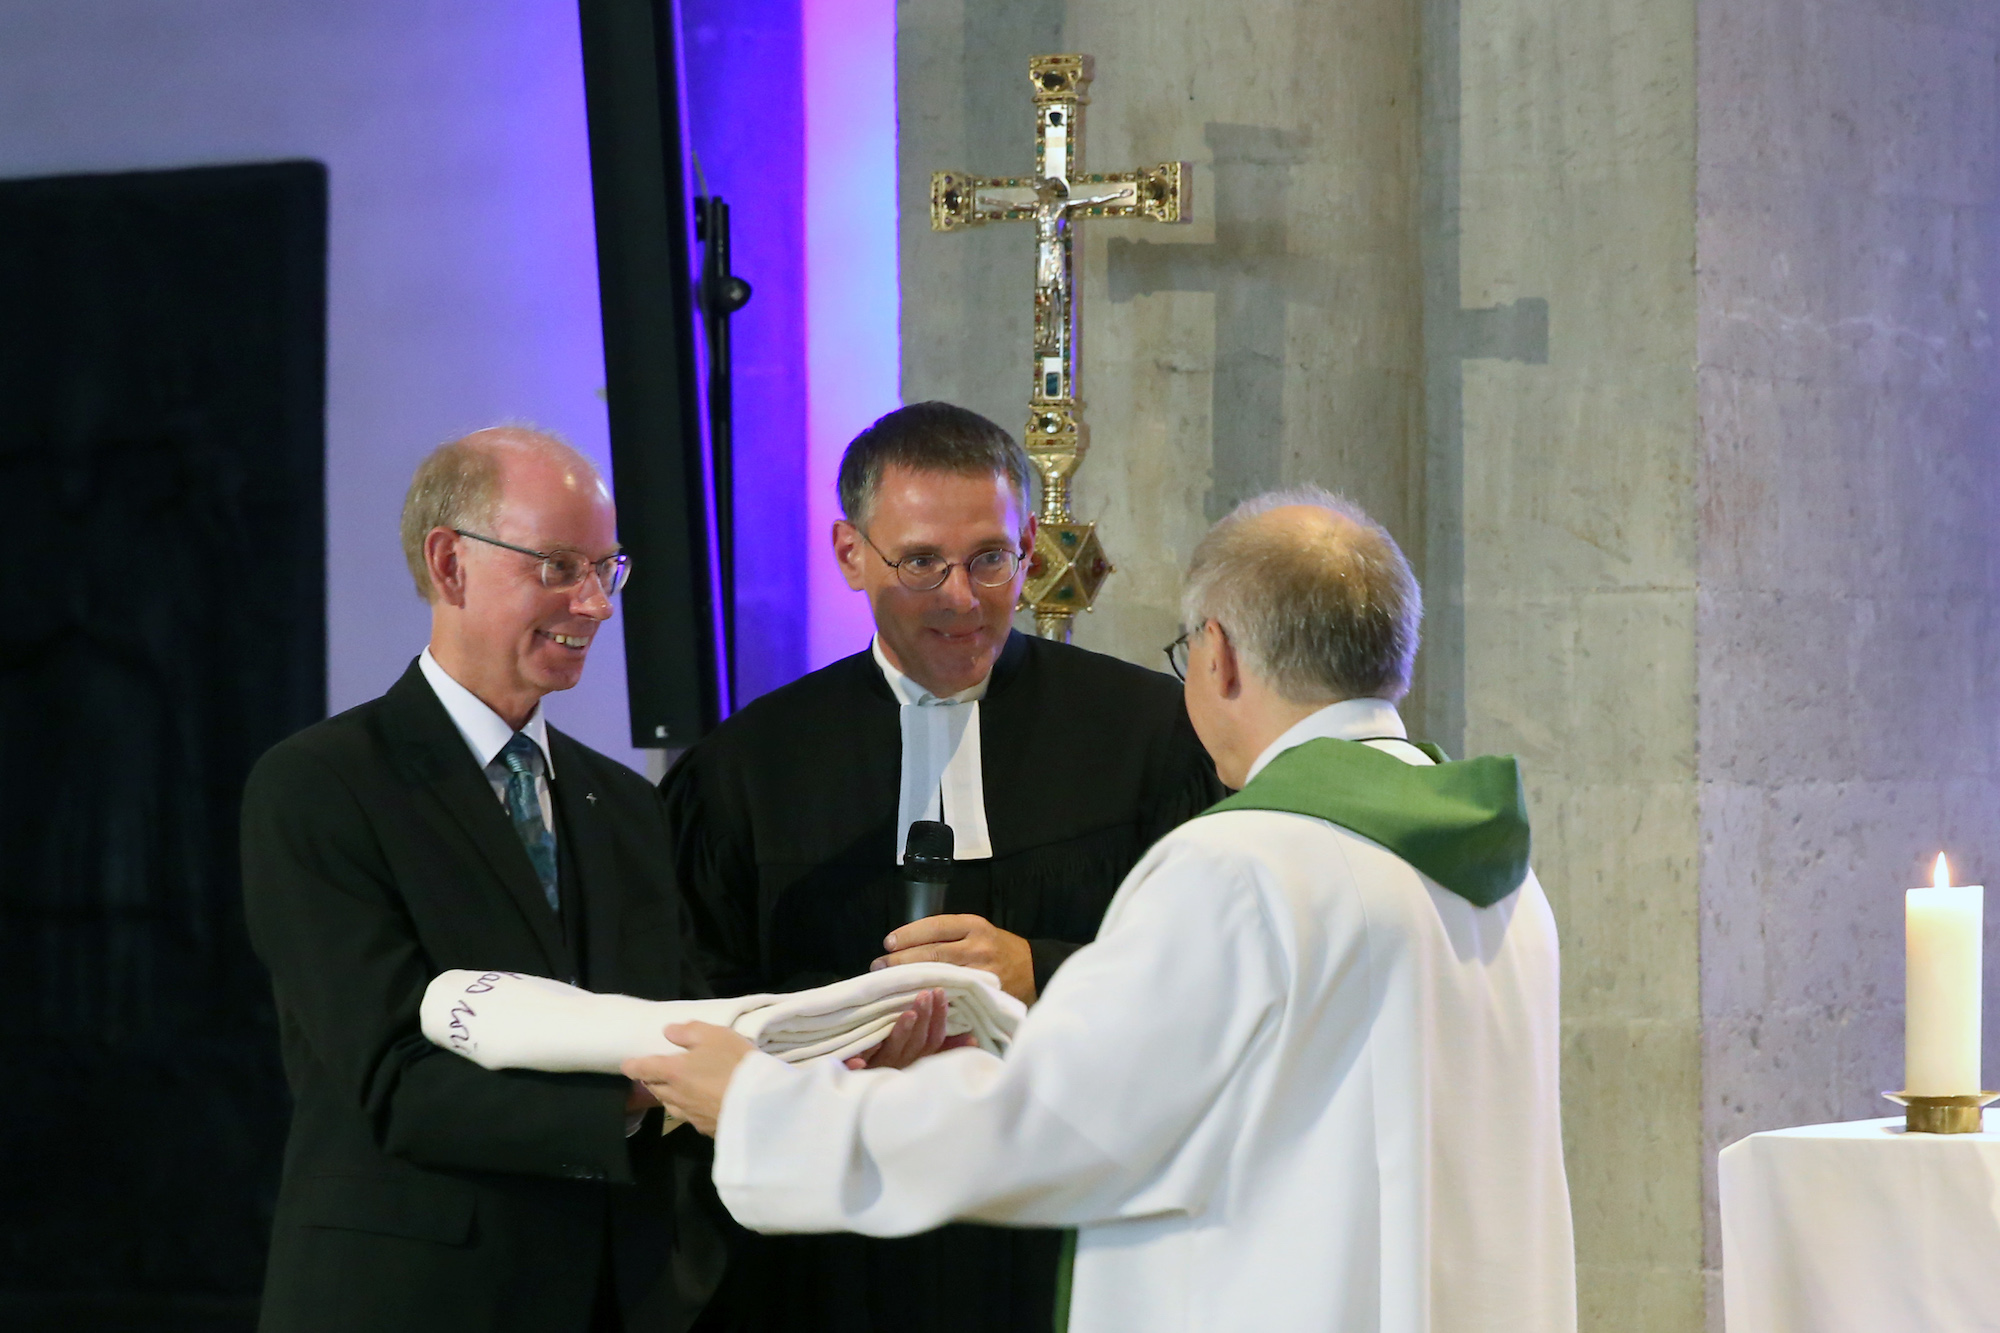 Propst Peter Blättler übergibt das Mönchengladbacher Altartuch an die evangelischen Geschwister Pfarrer Stephan Dedring (l.) und Pfarrer Till Hüttenberger.